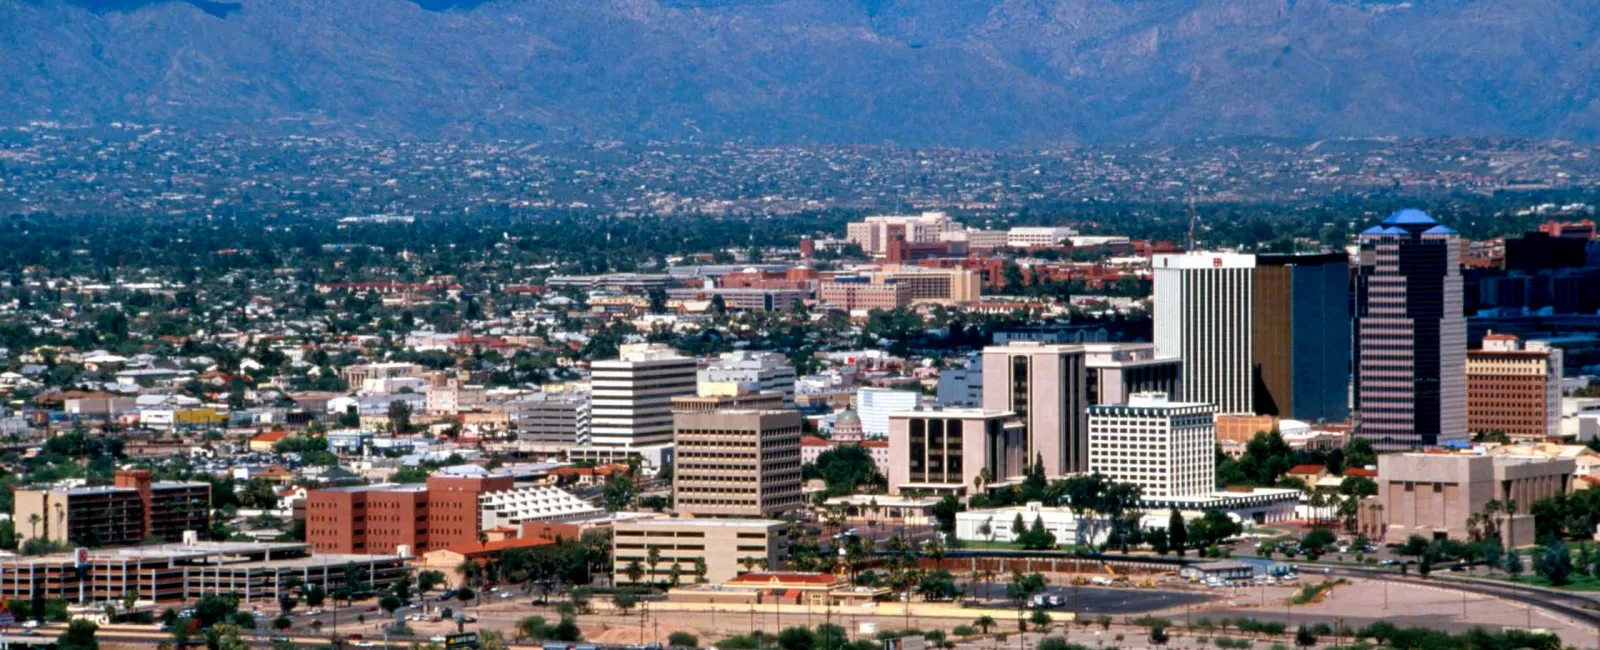 Top 5 Most Dangerous Cities in Arizona